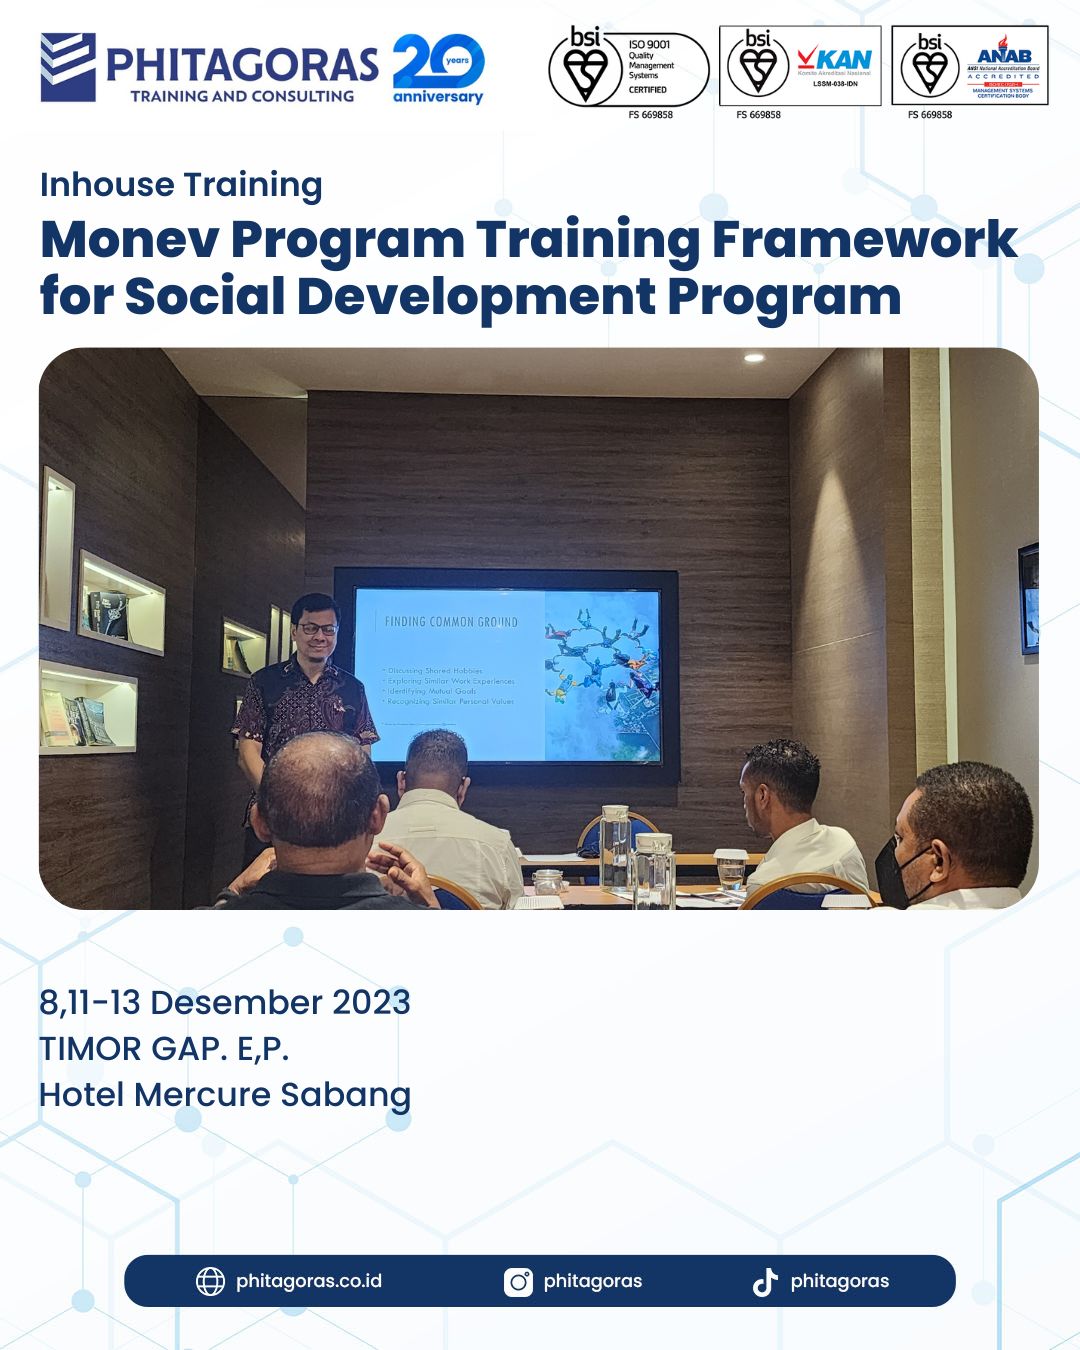 Inhouse Training Monev Program Training Framework for Social Development Program - TIMOR GAP. E,P. Hotel Mercure Sabang